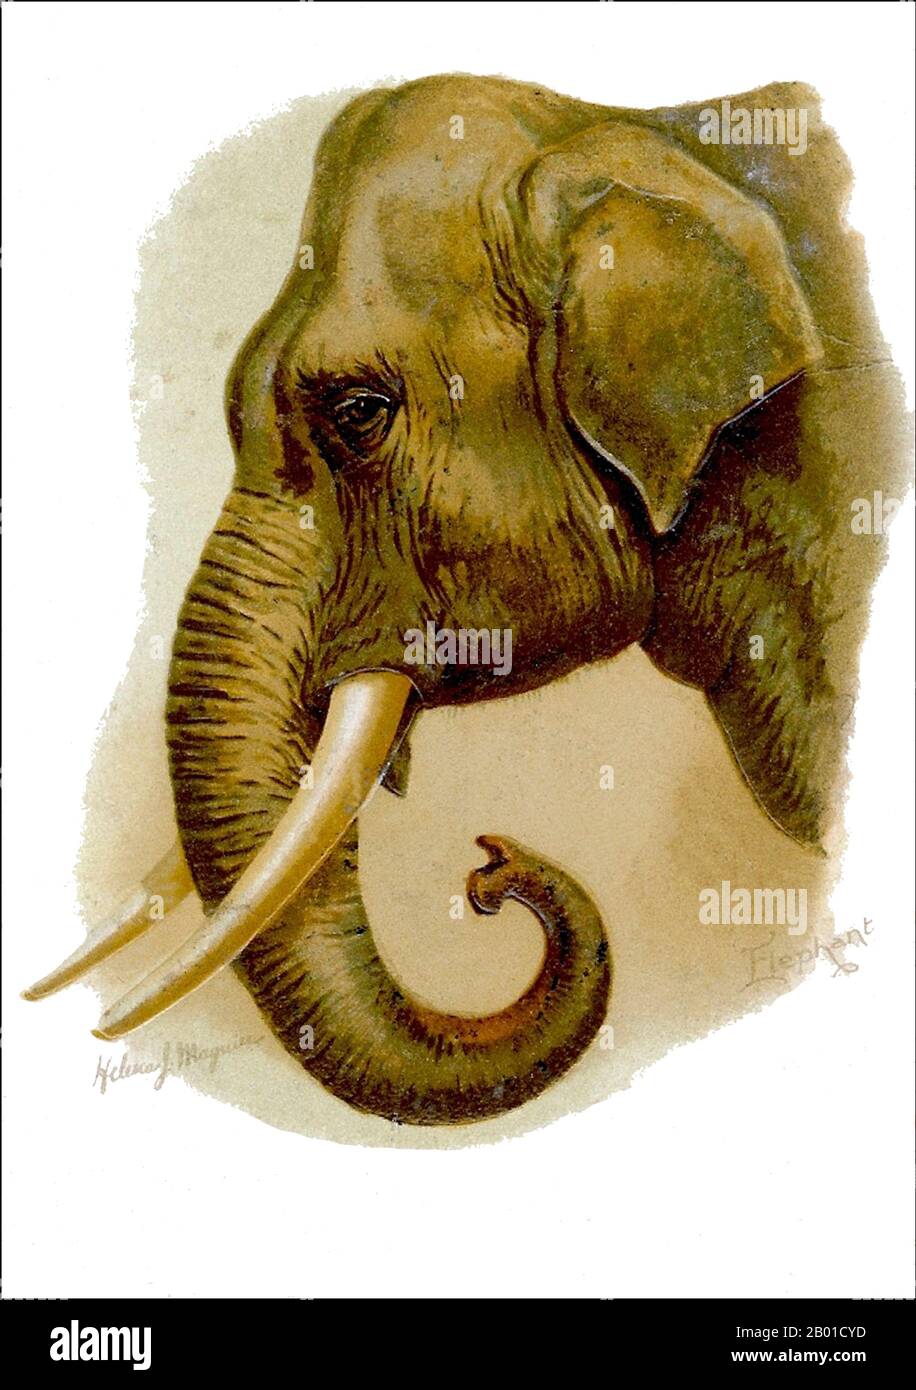 Asien: Indischer Elefant, gemalt von Helena J. Maguire (1860-1909), Ende 19.. Jahrhundert. Der indische Elefant (Elephas maximus indicus) ist eine von drei anerkannten Unterarten des asiatischen Elefanten und auf dem asiatischen Festland beheimatet. Im Allgemeinen sind asiatische Elefanten kleiner als afrikanische Elefanten und haben den höchsten Körperpunkt auf dem Kopf. Die Spitze ihres Rumpfes hat einen fingerähnlichen Prozess. Ihr Rücken ist konvex oder gerade. Indische Elefanten erreichen eine Schulterhöhe zwischen 2 und 3,5 m (6,6 und 11,5 ft), wiegen zwischen 2.000 und 5.000 kg (4.400 und 11.000 lb) und haben 19 Rippenpaare. Stockfoto